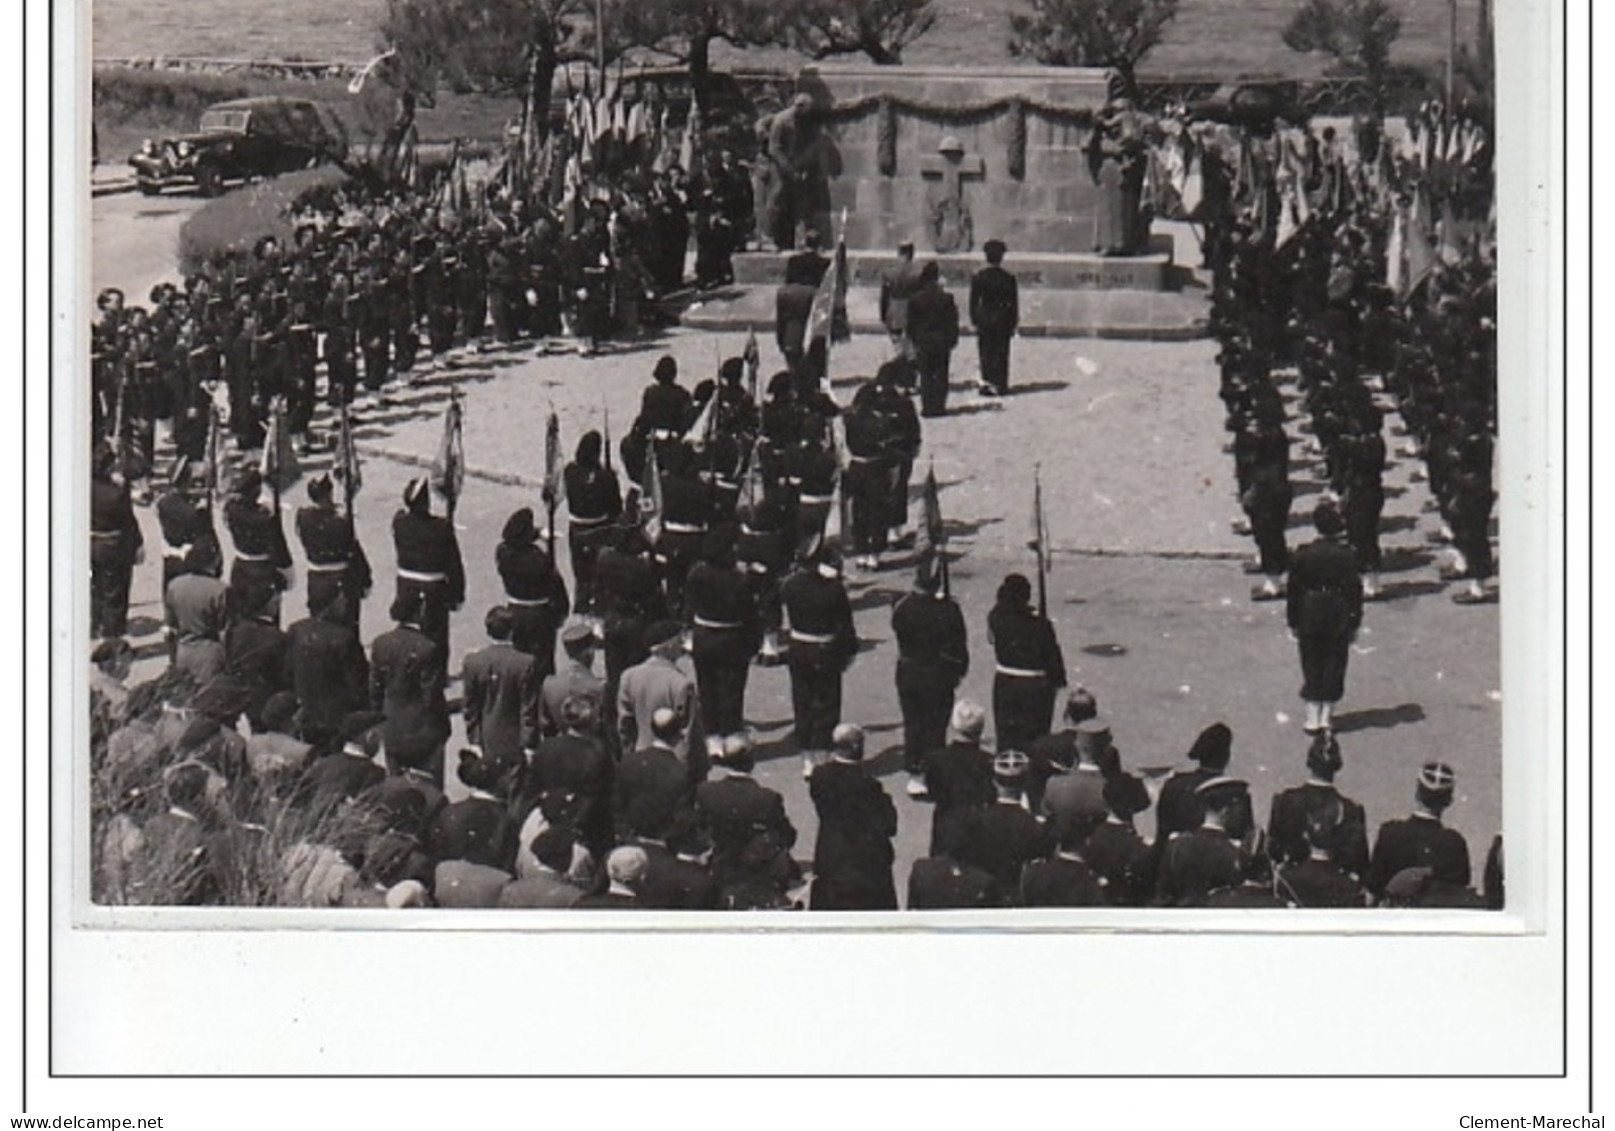 BIARRITZ : lot de 7 photos format cartes photos d'un défilé militaire vers 1945 - très bon état